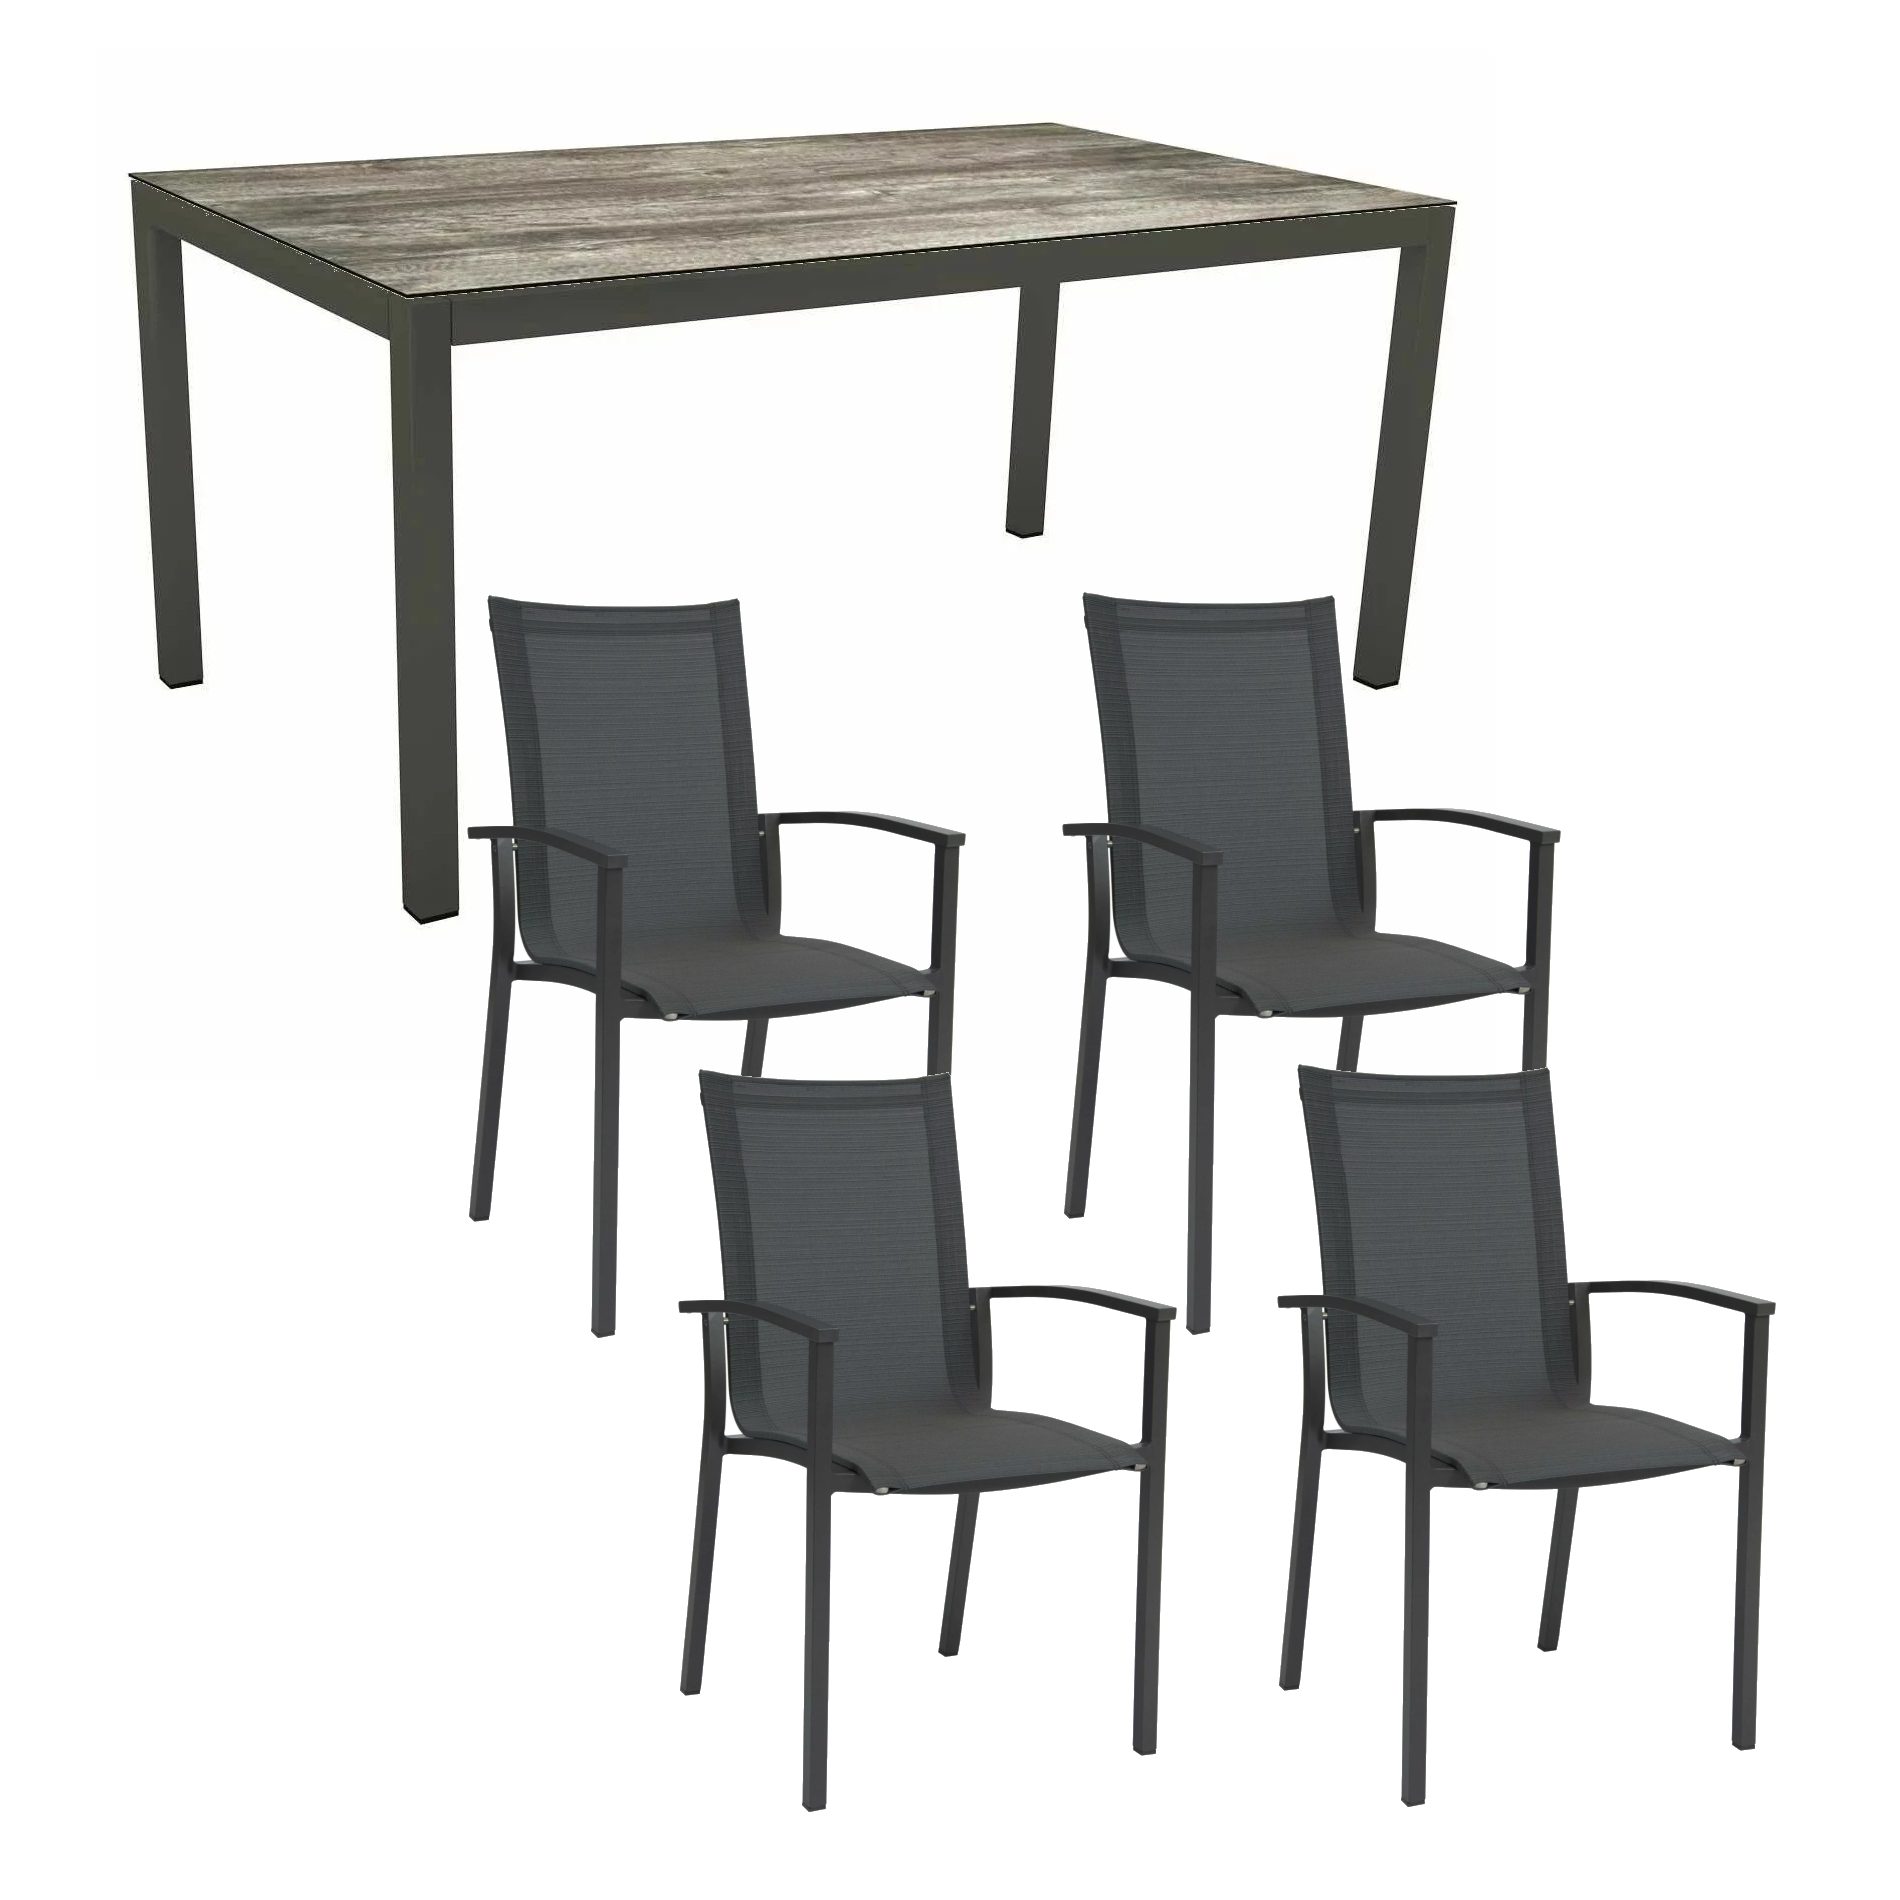 Stern Gartenmöbel-Set "Evoee", Gestelle Aluminium anthrazit, Sitzfläche Textilgewebe karbon, Tischplatte HPL Tundra Grau